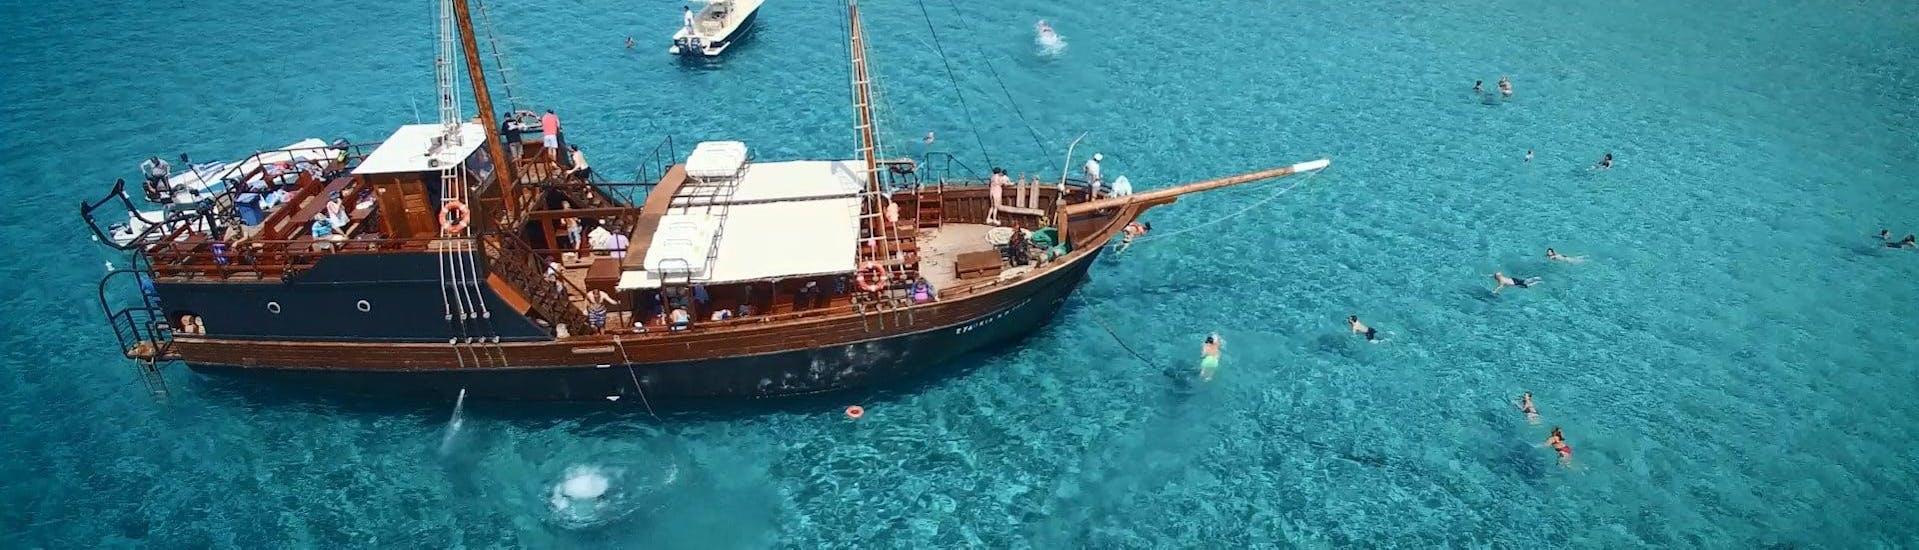 Imagen de la embarcación pirtae utilizada para las excursiones en barco de Cretan Daily Cruises - Islas Chrissi.